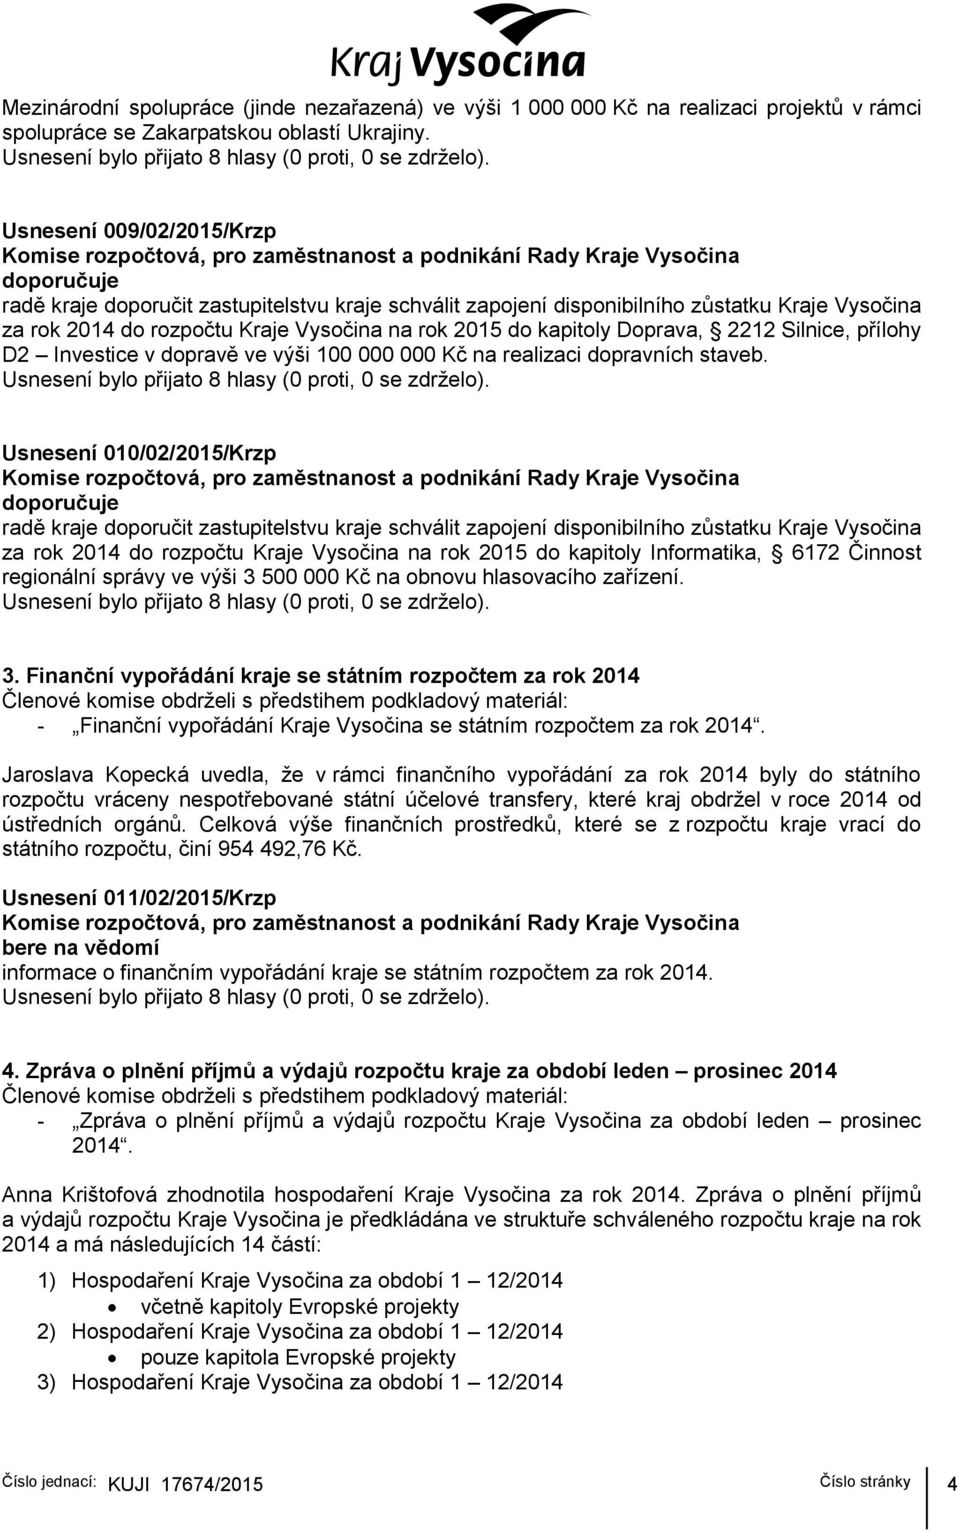 Usnesení 010/02/2015/Krzp za rok 2014 do rozpočtu Kraje Vysočina na rok 2015 do kapitoly Informatika, 6172 Činnost regionální správy ve výši 3 